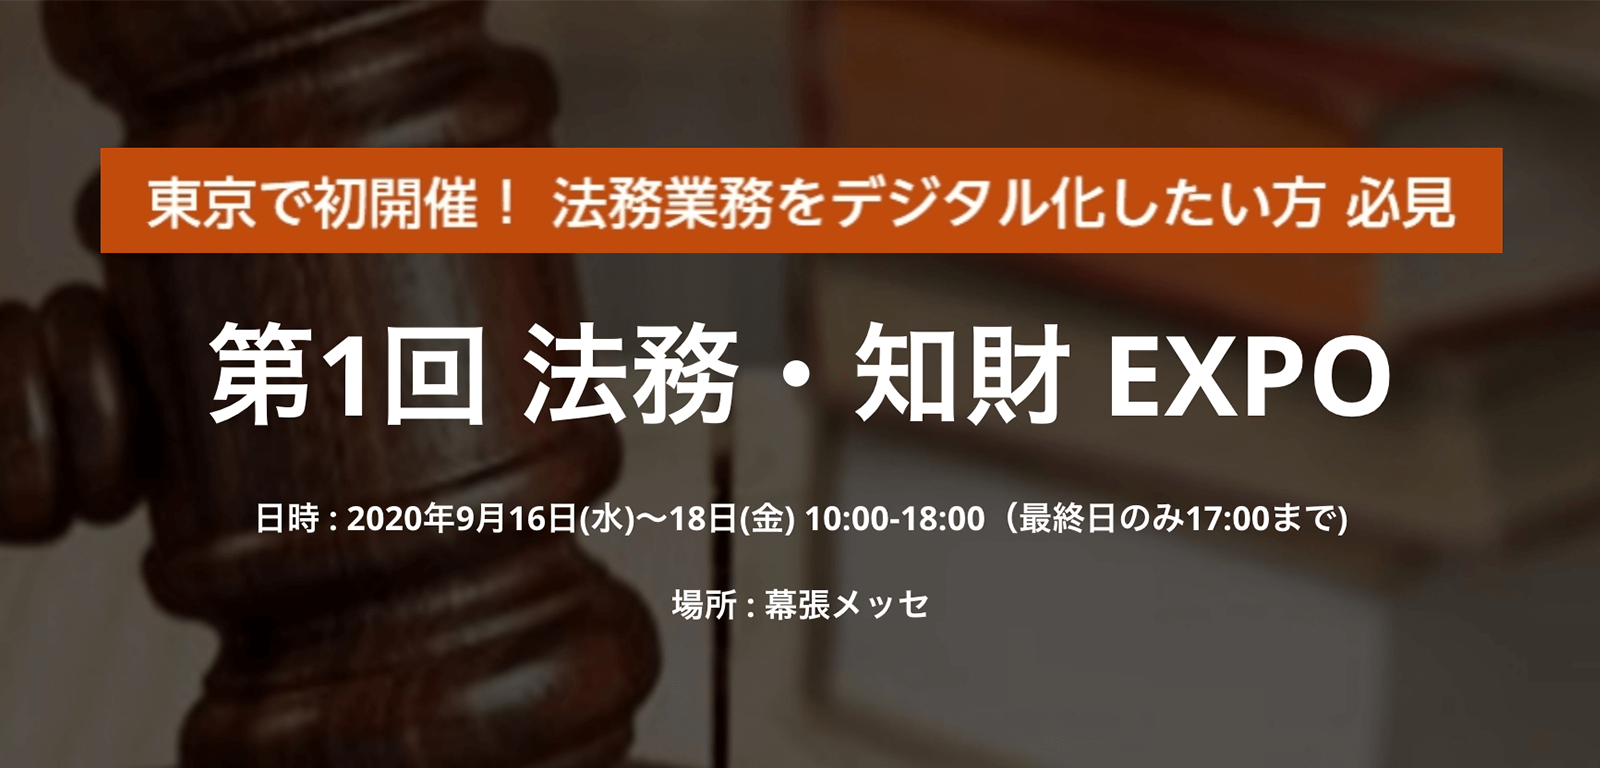 法務・知財EXPO東京が9月16日スタート—特別講演は「リーガルデザインのはじめ方」